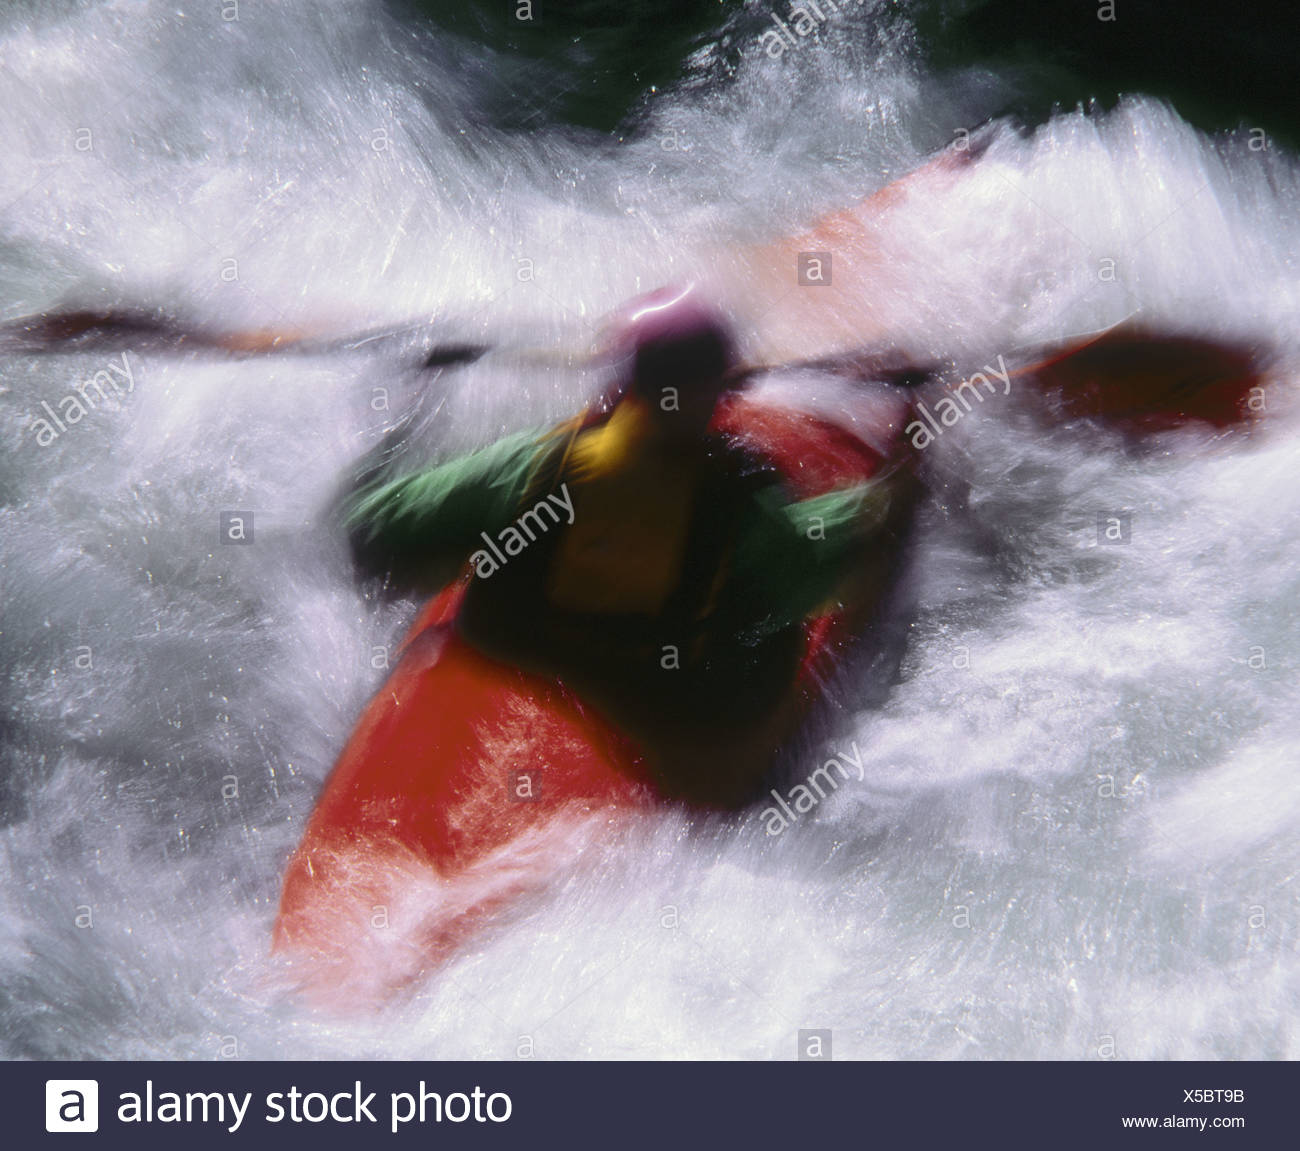 action man kayak